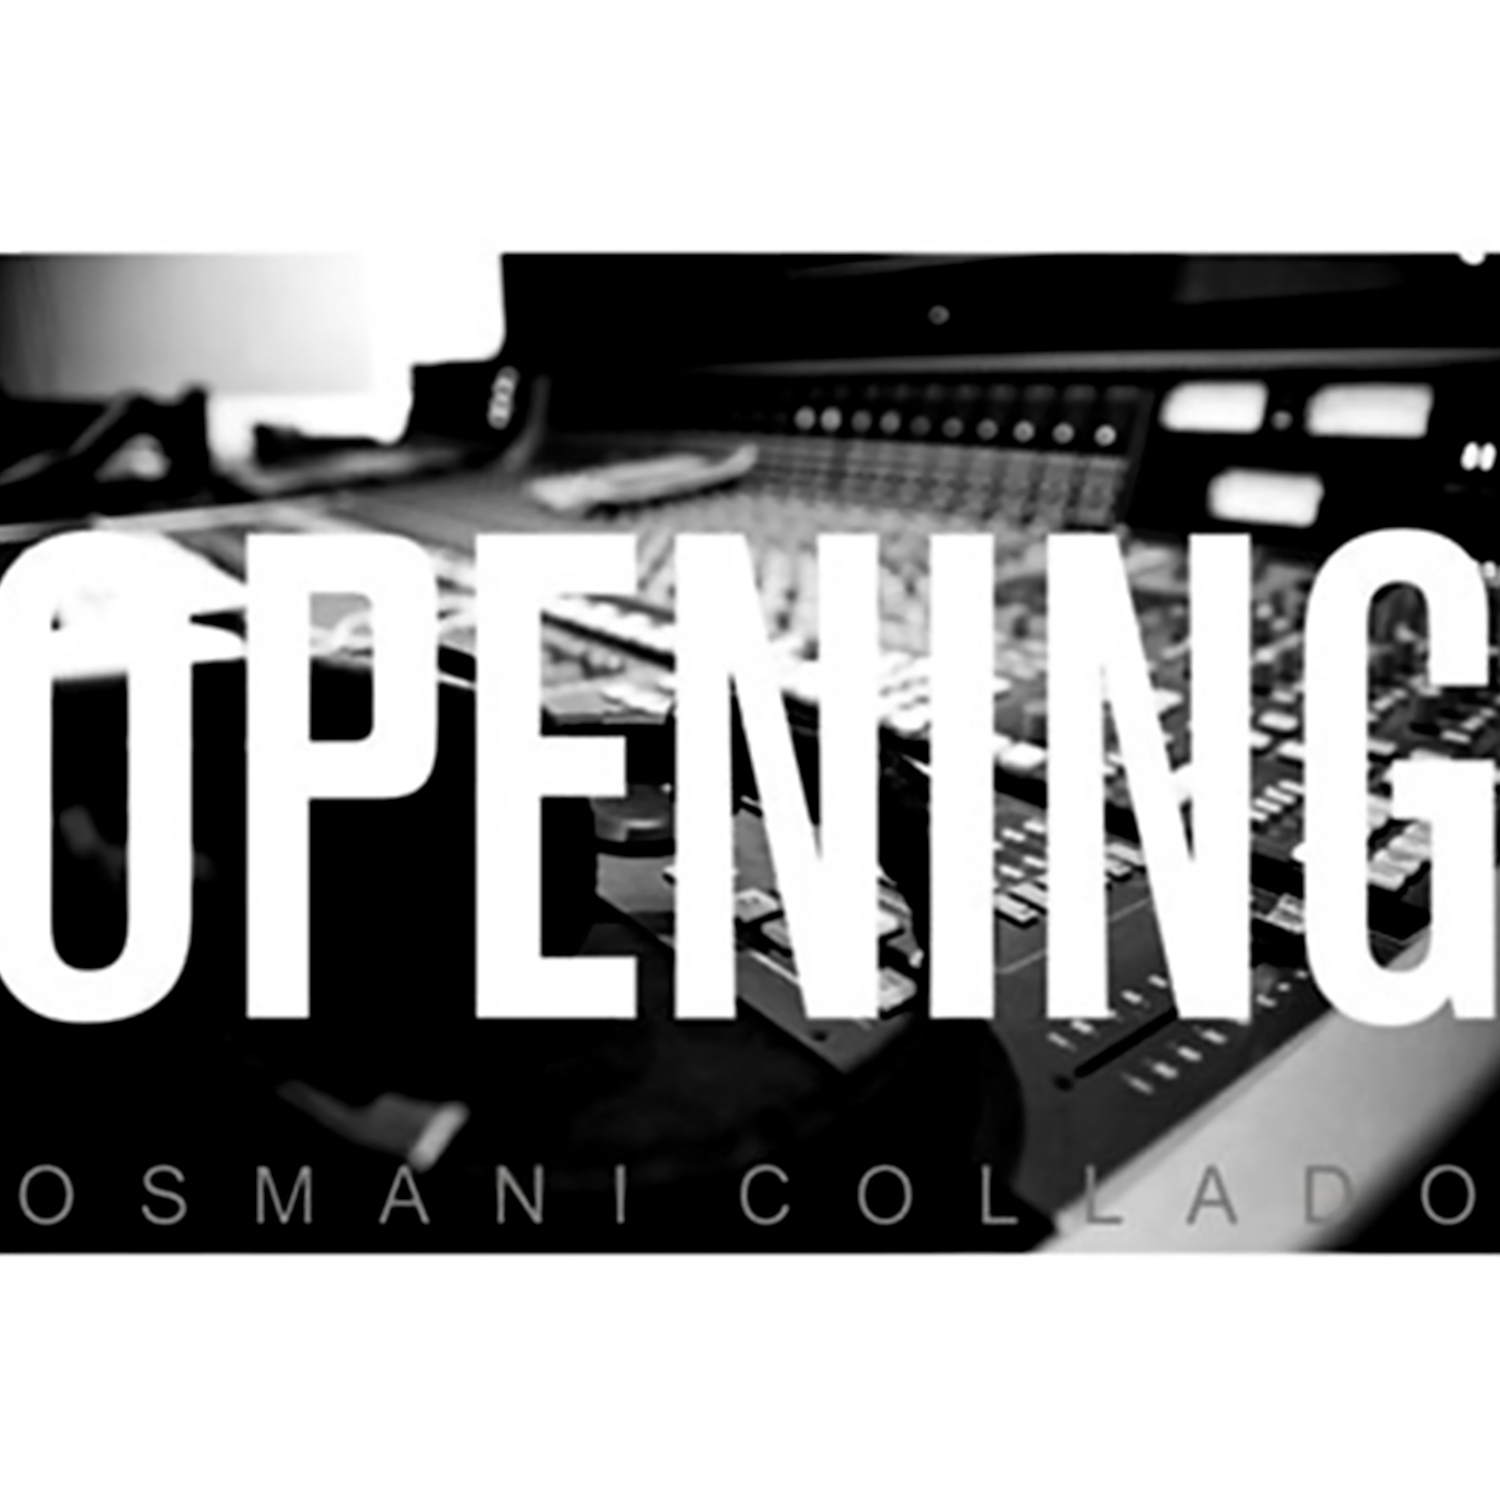 CD-1213 OSMANI COLLADO opening